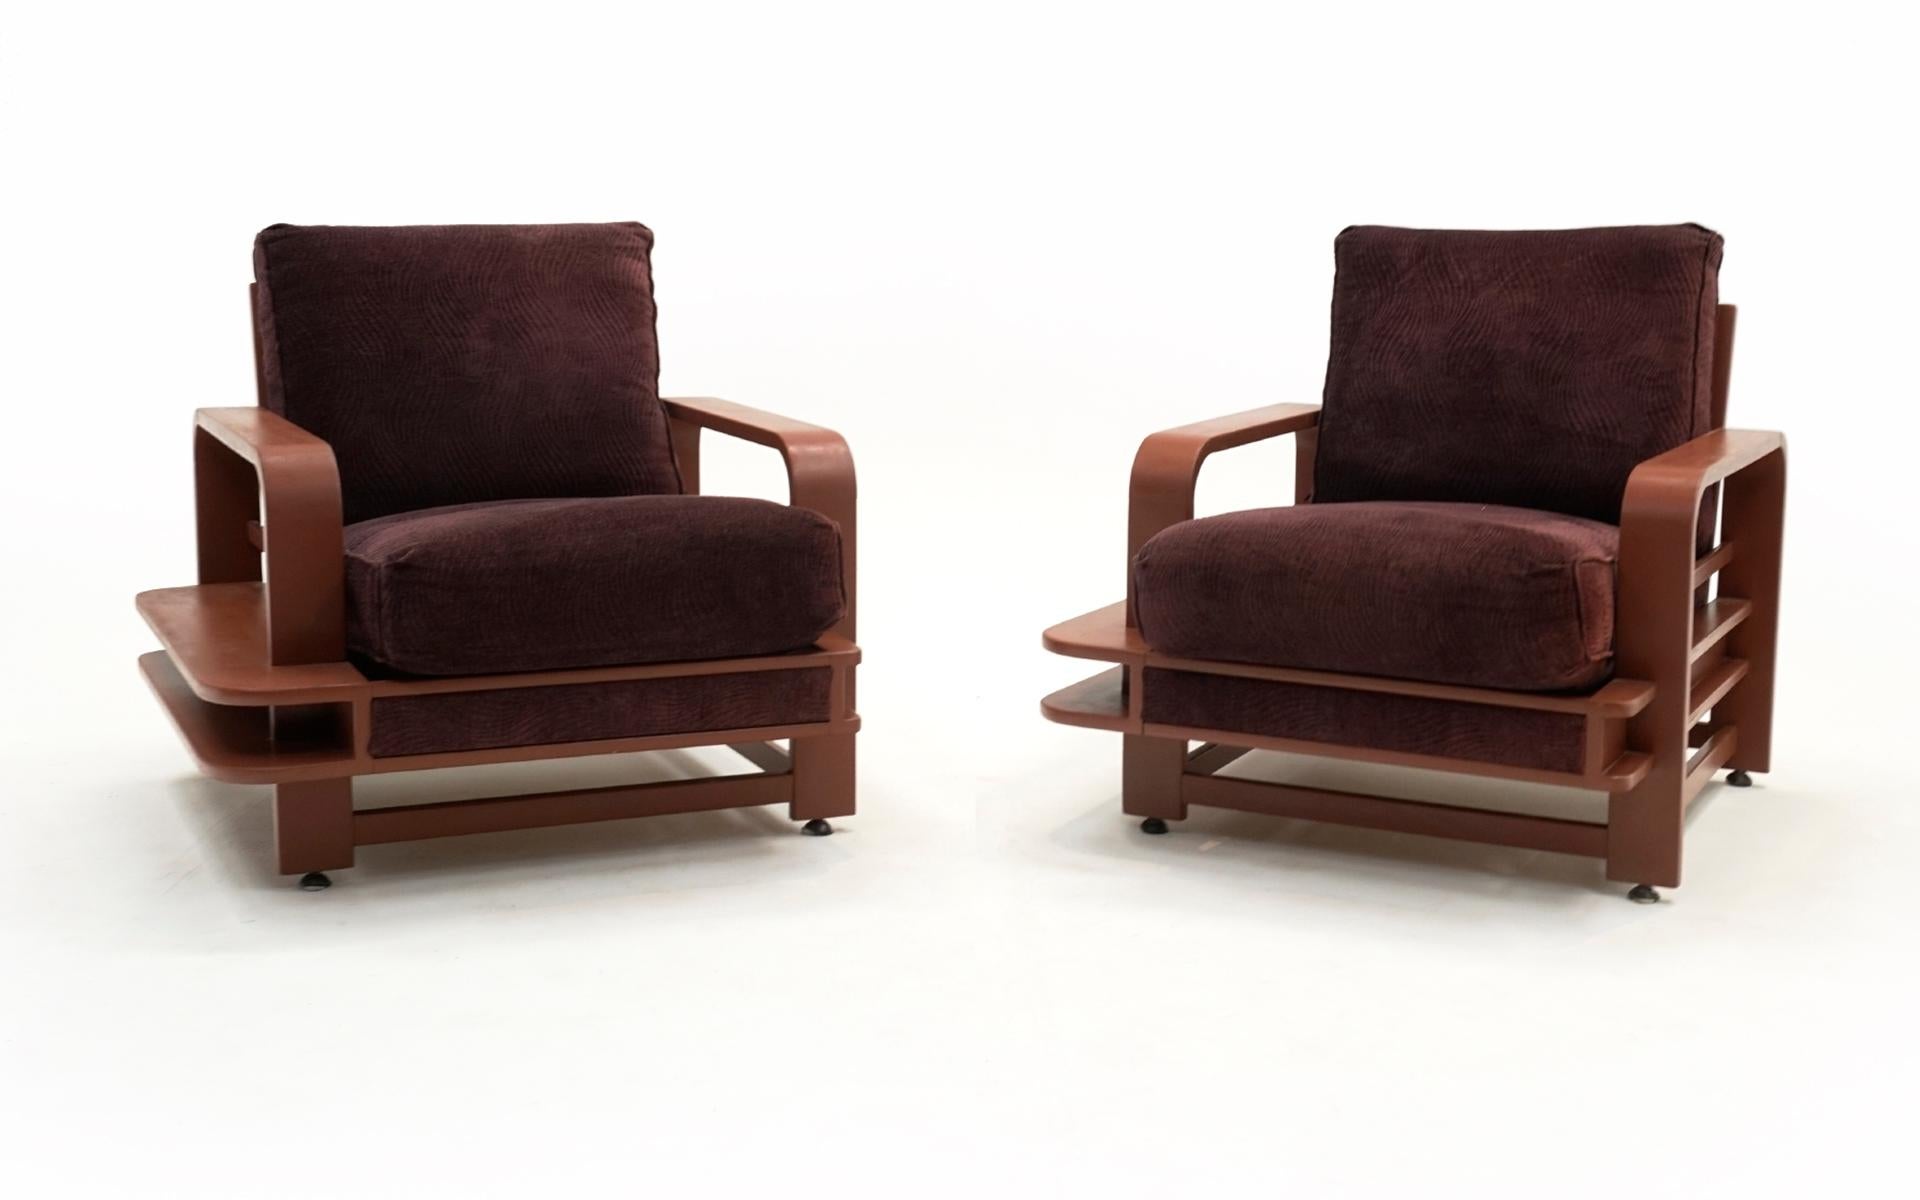 Seltener Satz von zwei Russel Wright (Russell Wright) großen Lounge-Sesseln mit Holzregal / Bücherregal Rahmen gesehen.  In den letzten Jahren neu gepolstert.  Sehr bequem. 